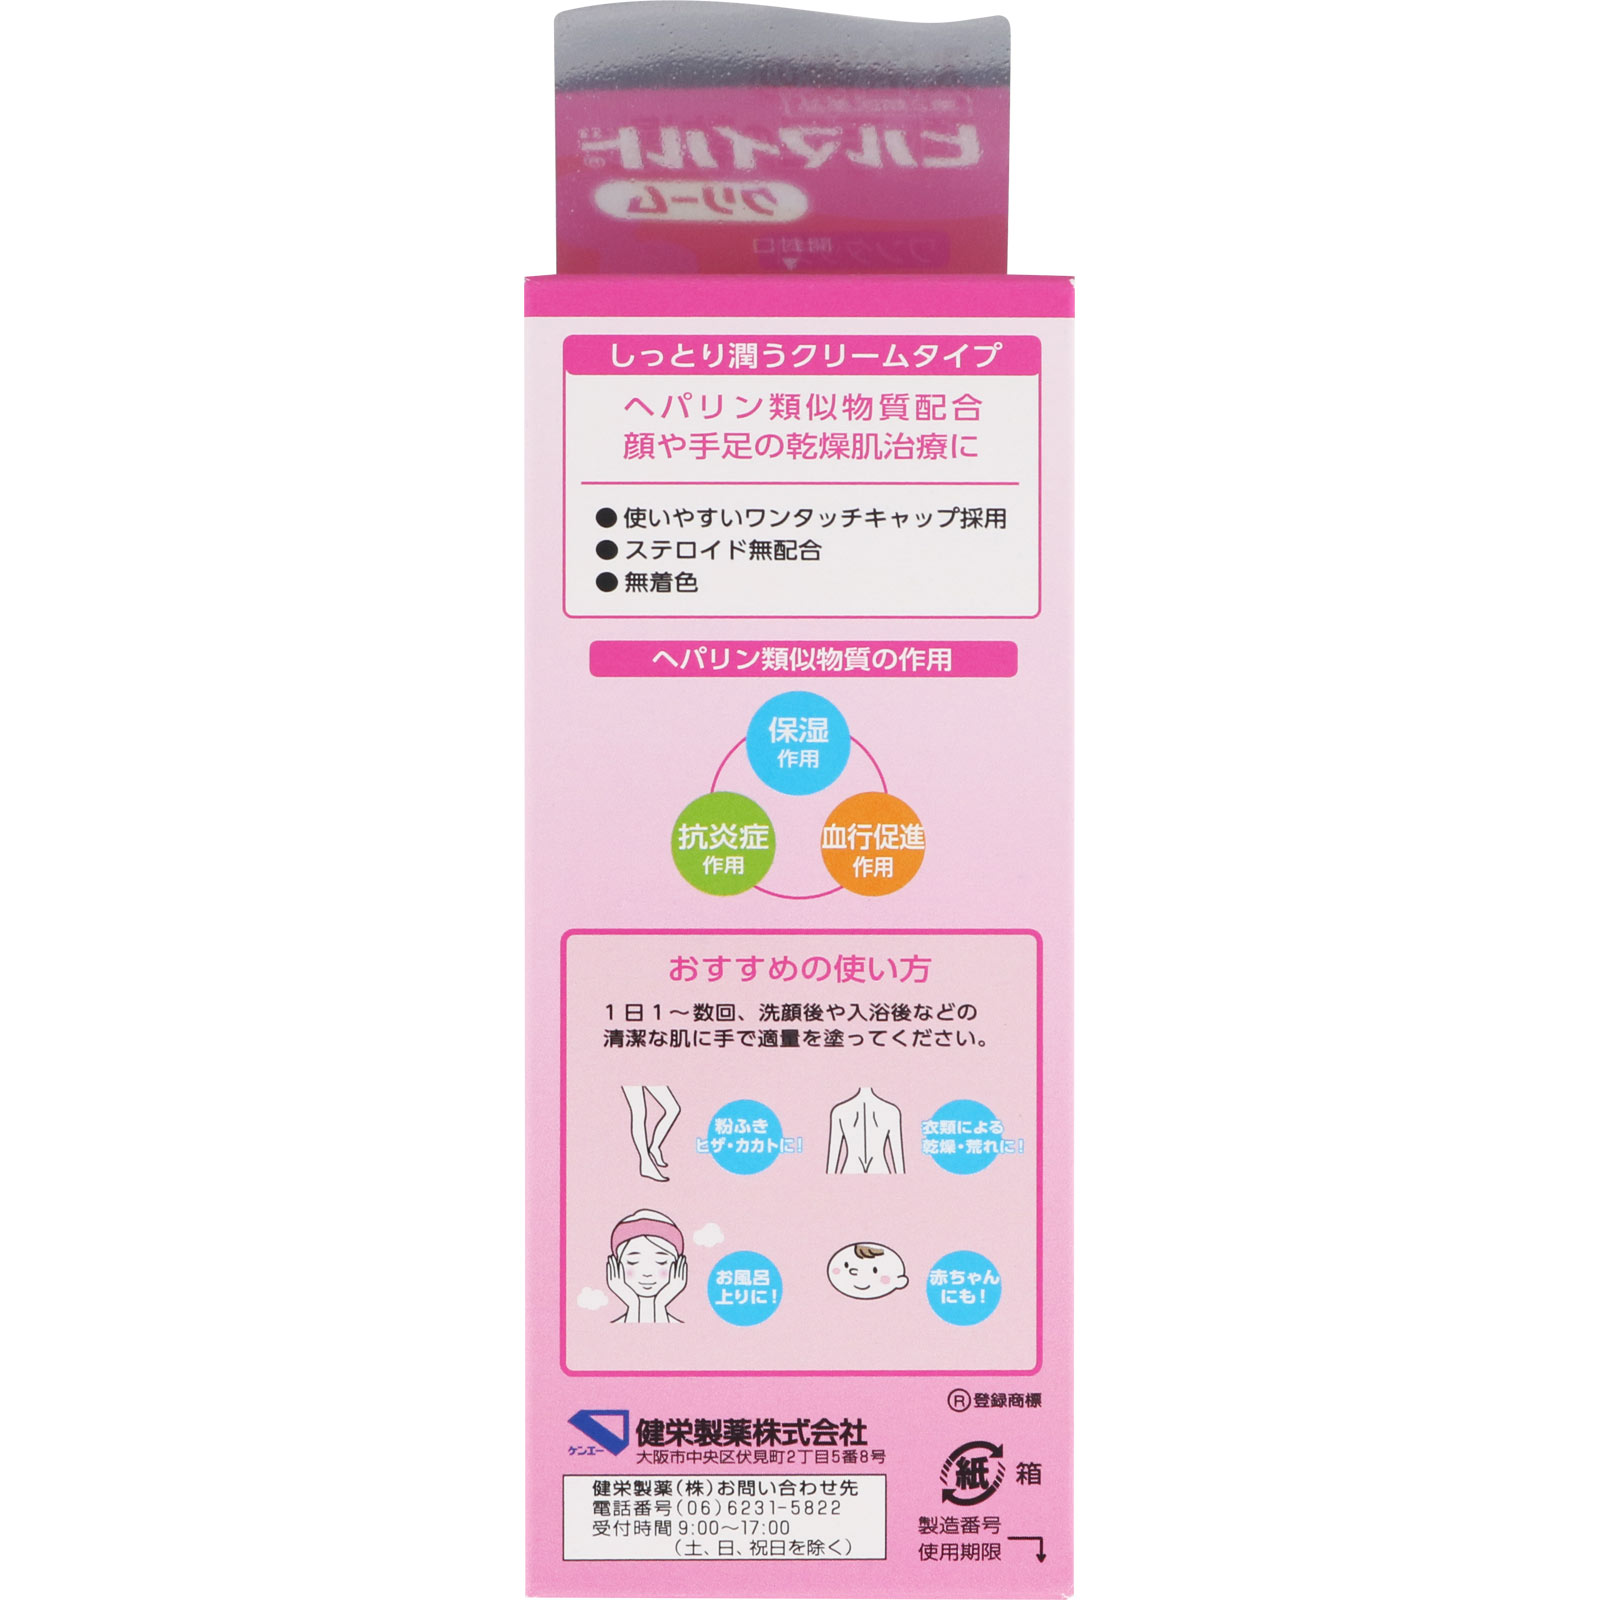 ヒルマイルドクリーム 30g 【第二類医薬品】: 医薬品・衛生用品 Tomod's ONLINE SHOP